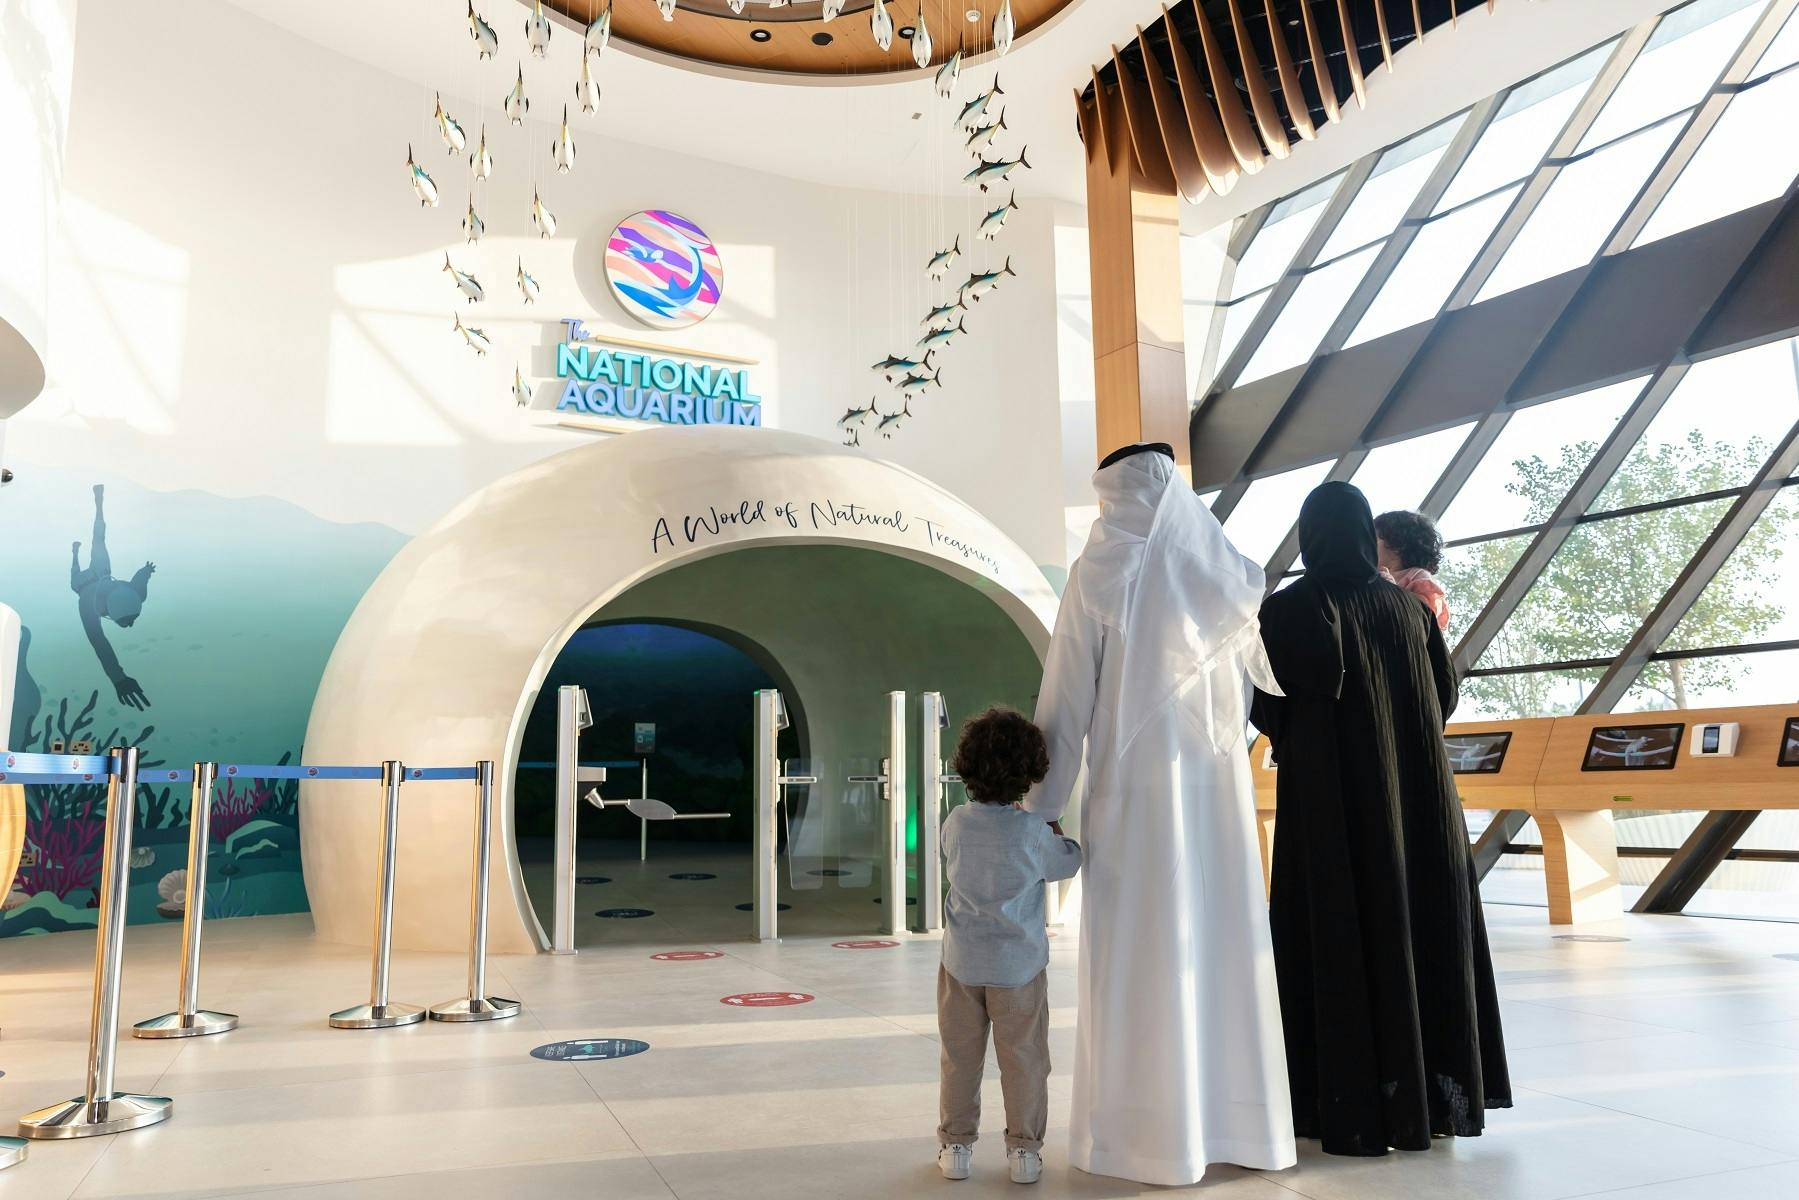 Eintrittskarten für das National Aquarium Abu Dhabi